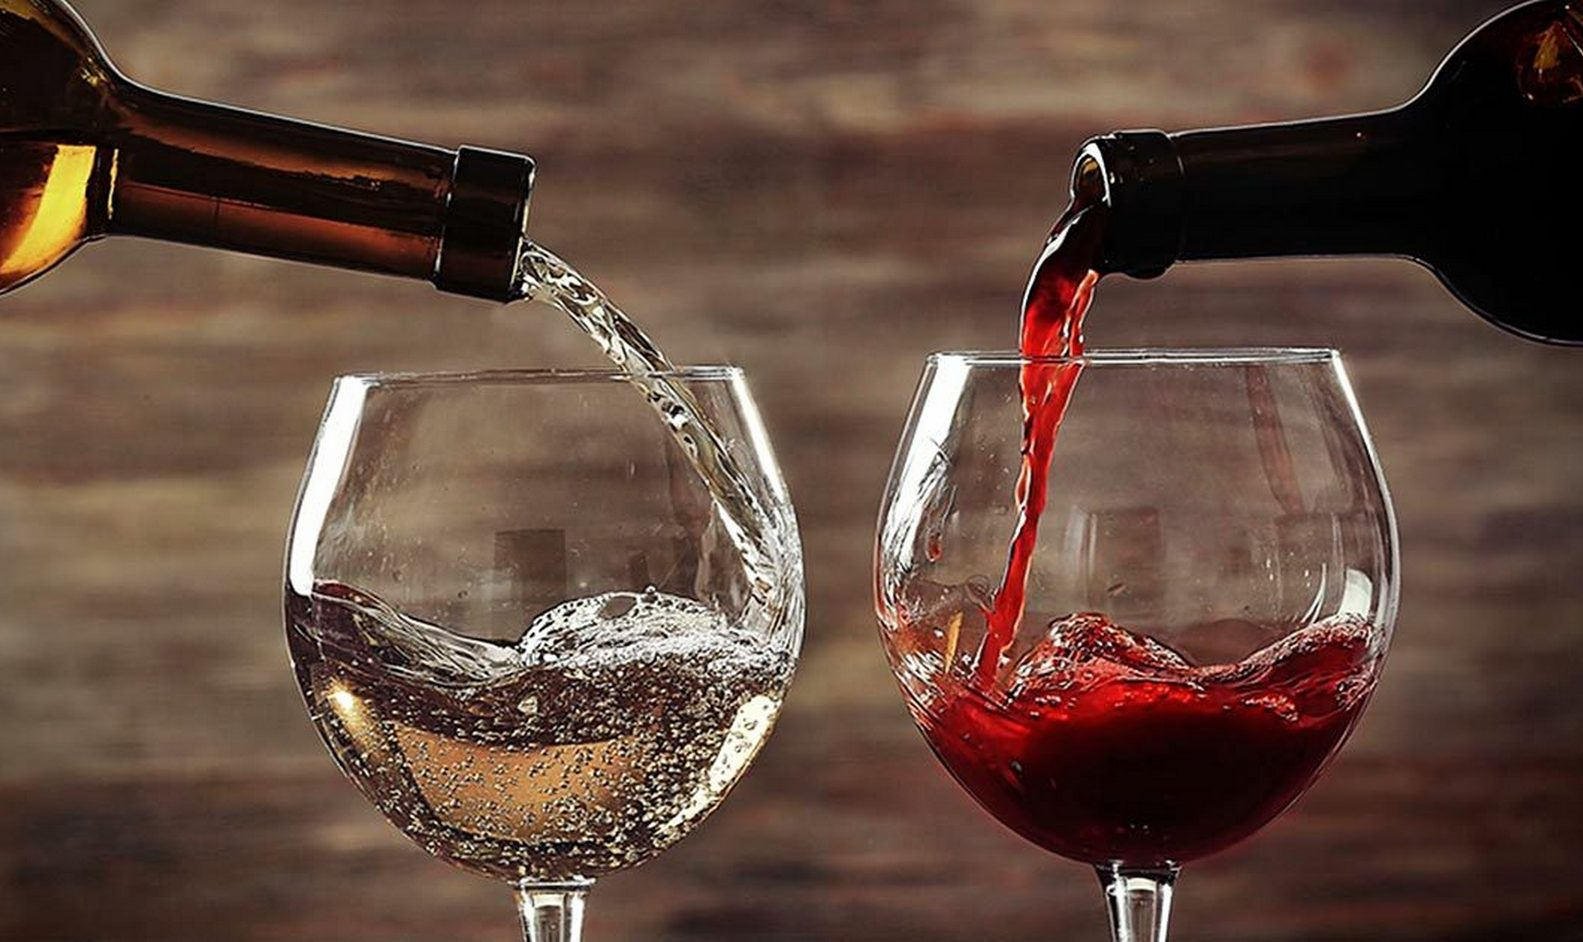 Правило 20/20: експерт з алкоголю поділилася цікавим трюком для вина